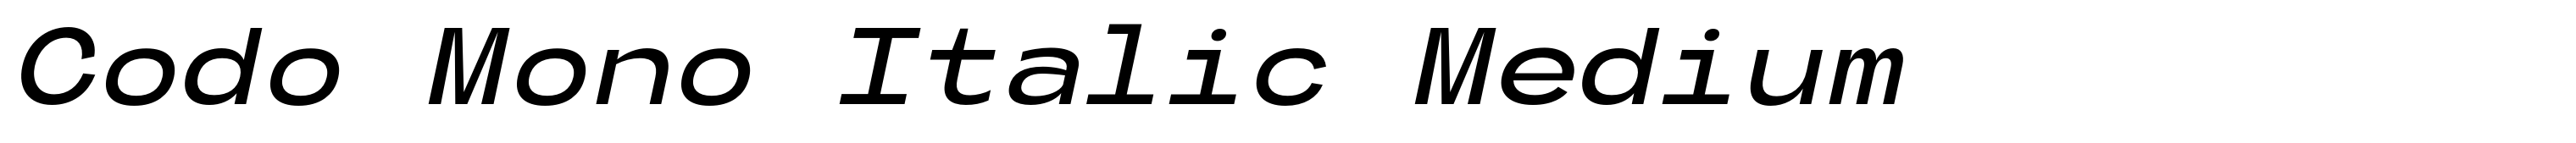 Codo Mono Italic Medium